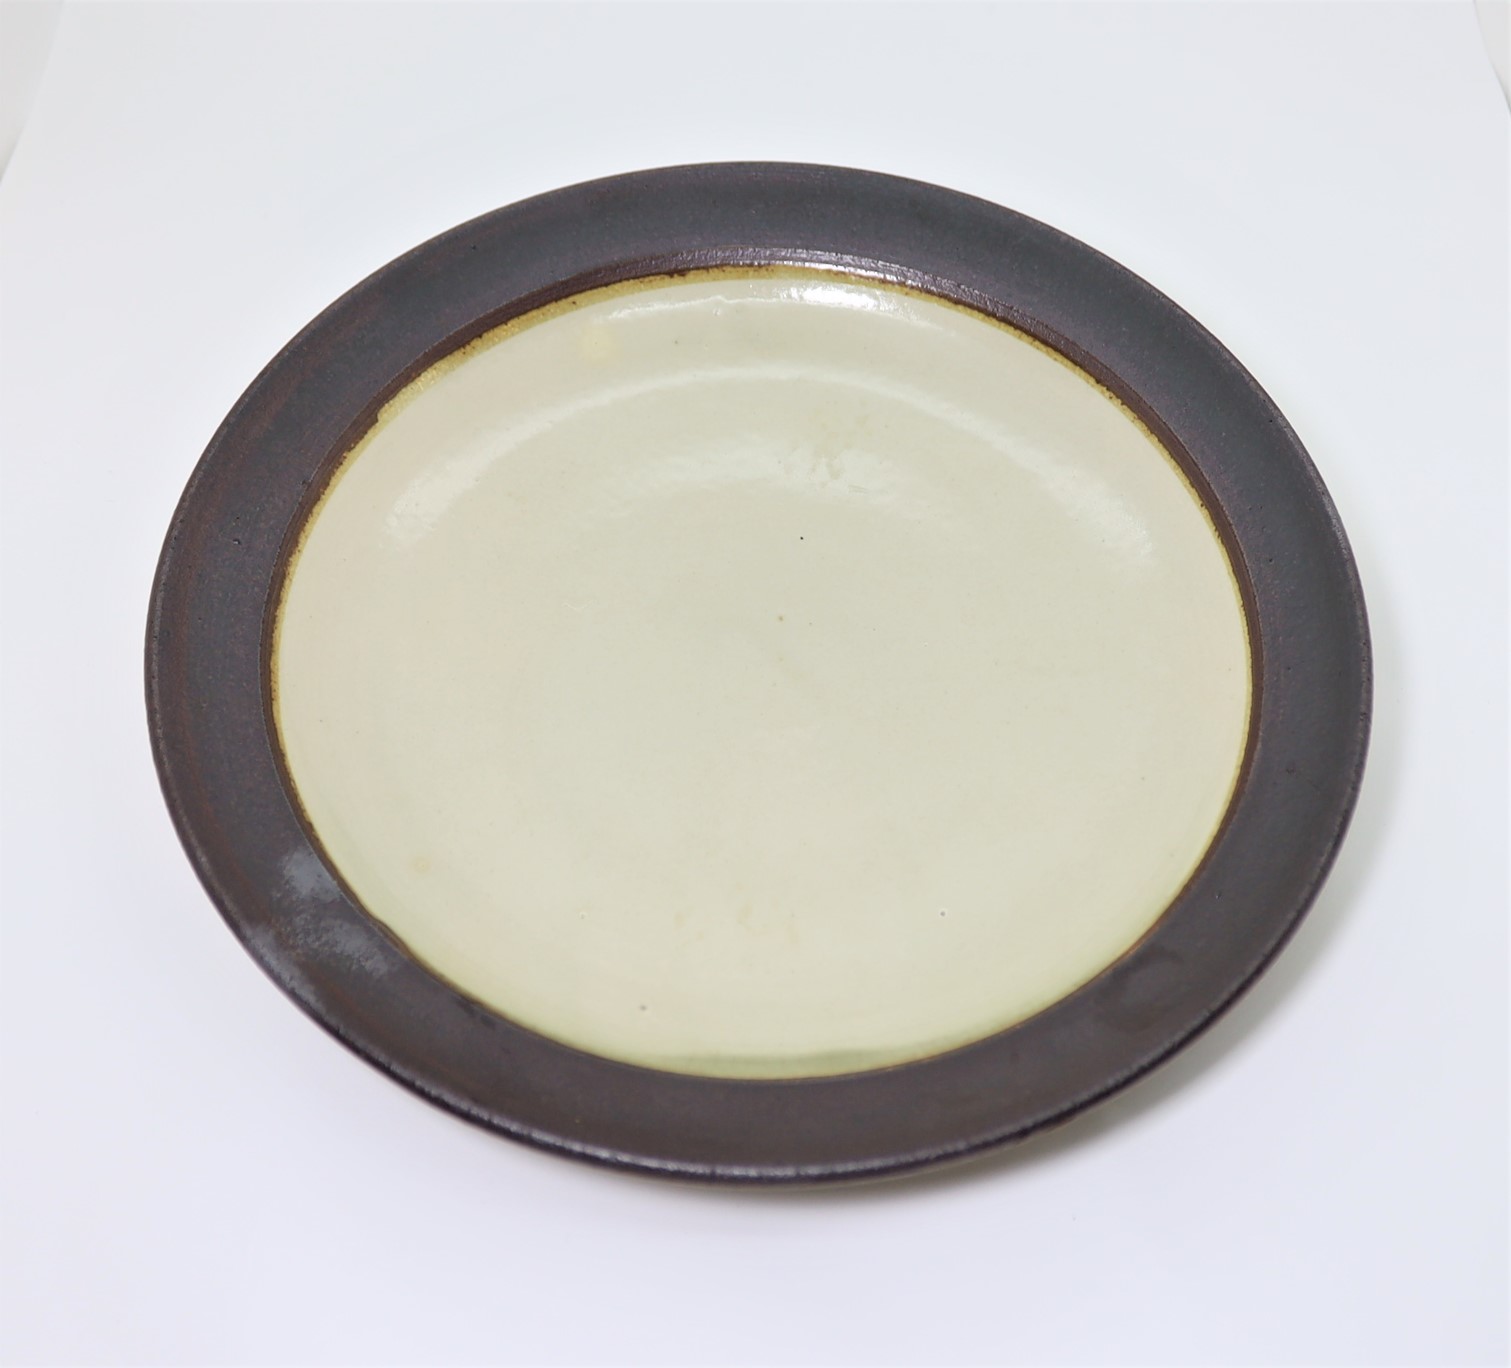 出西焼 8寸 縁鉄砂白化粧皿 1970年代/Syussai-yaki/24cm dish/white/1970's – 倉日用商店